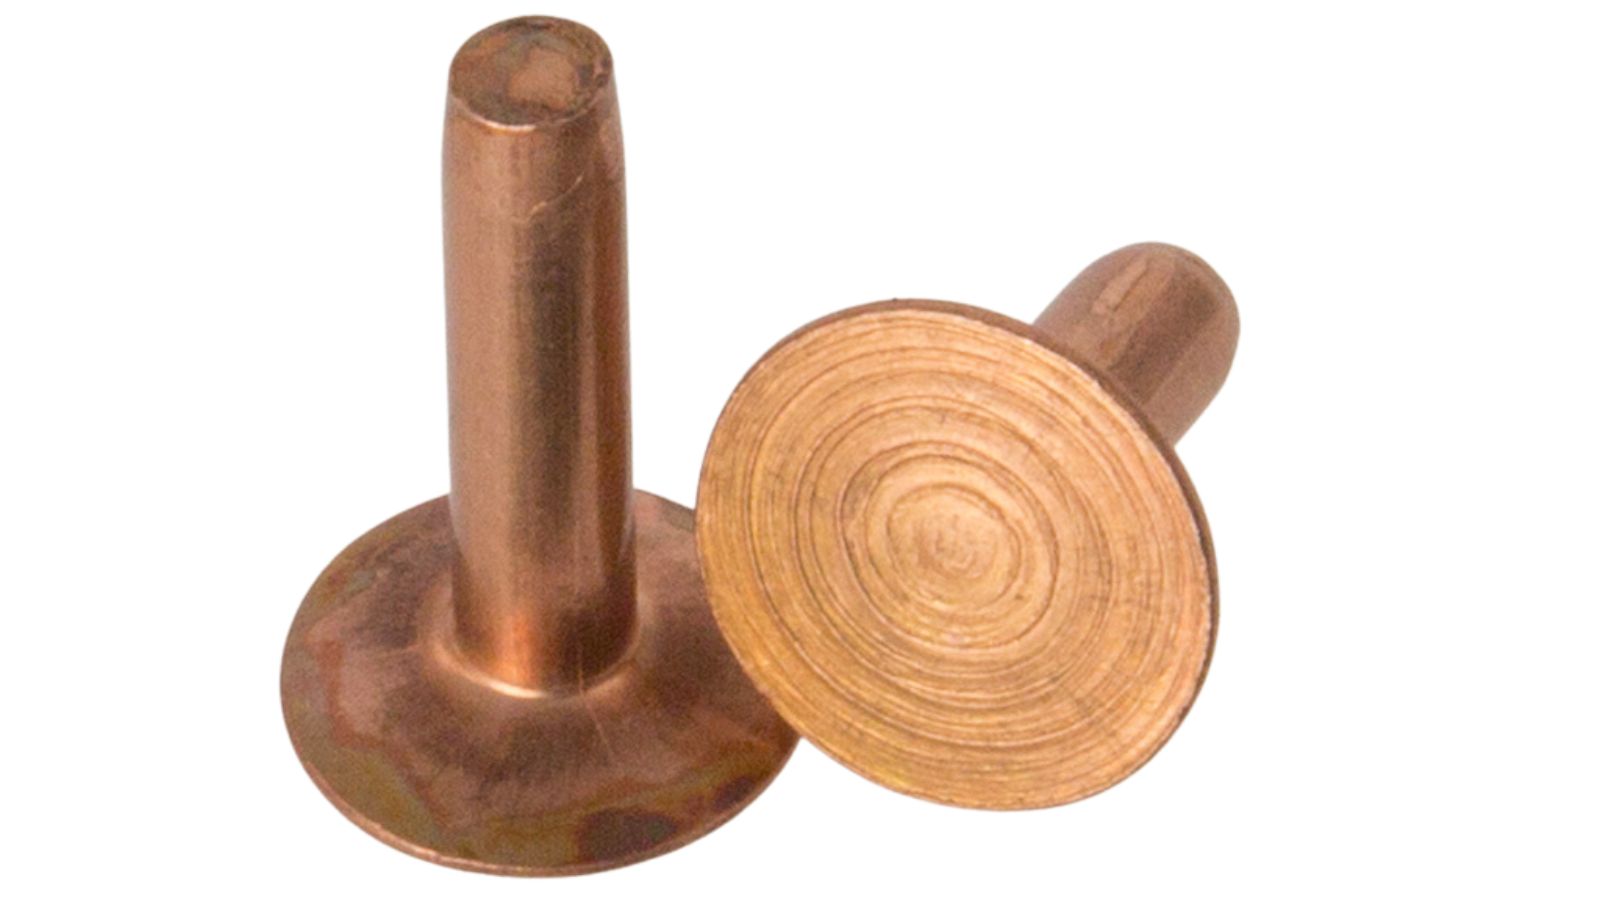 Copper rivets